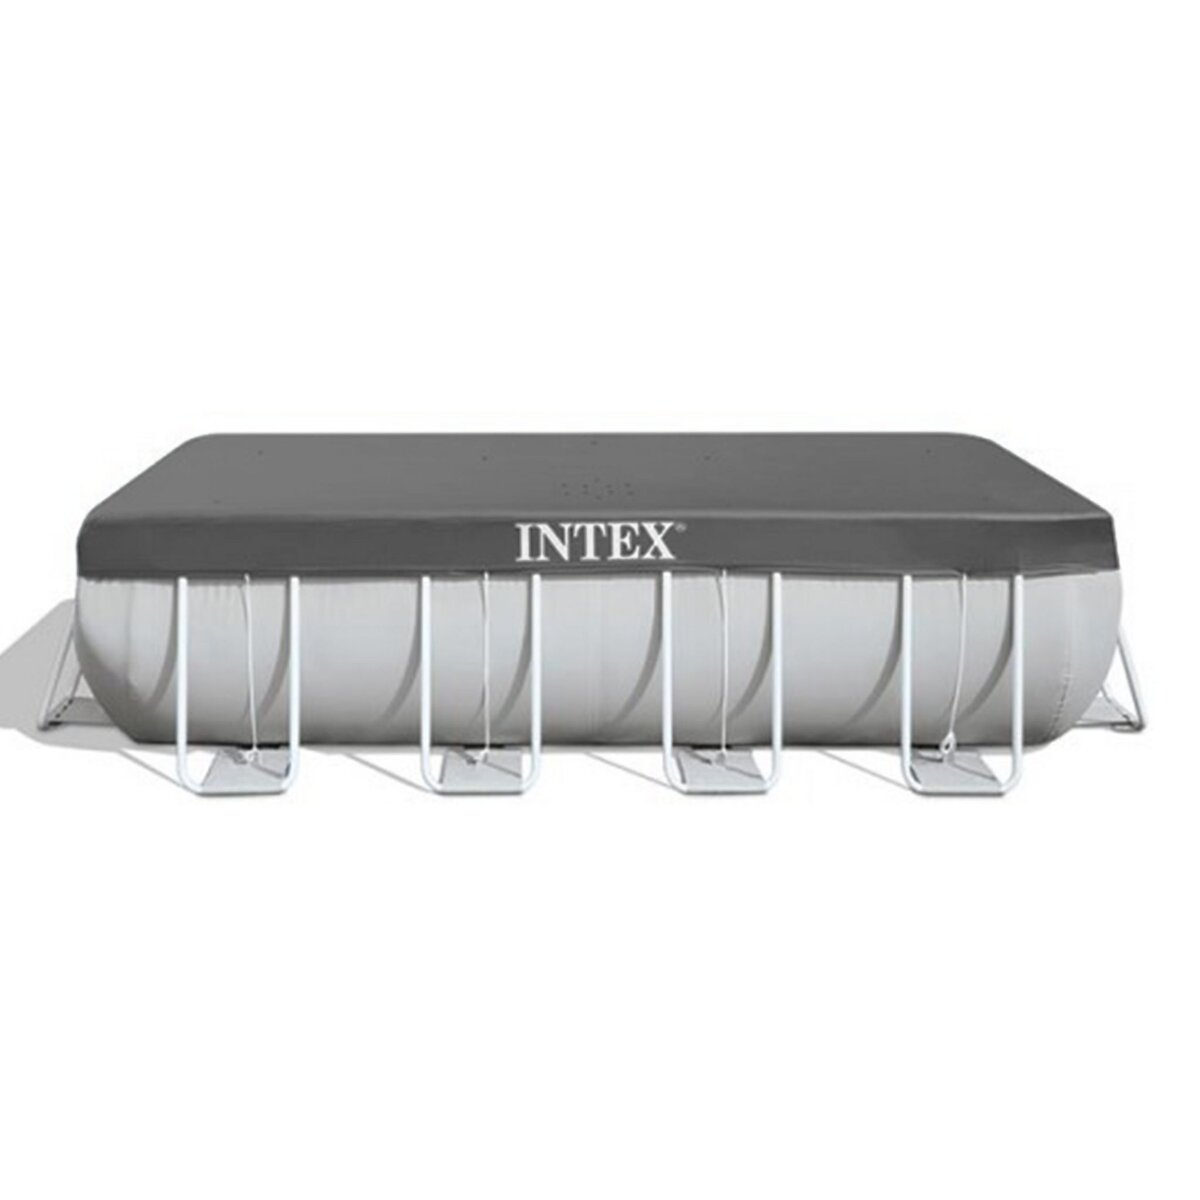 INTEX Bâche de protection pour piscine tubulaire rectangulaire 7,32 x 3,66 m - Intex